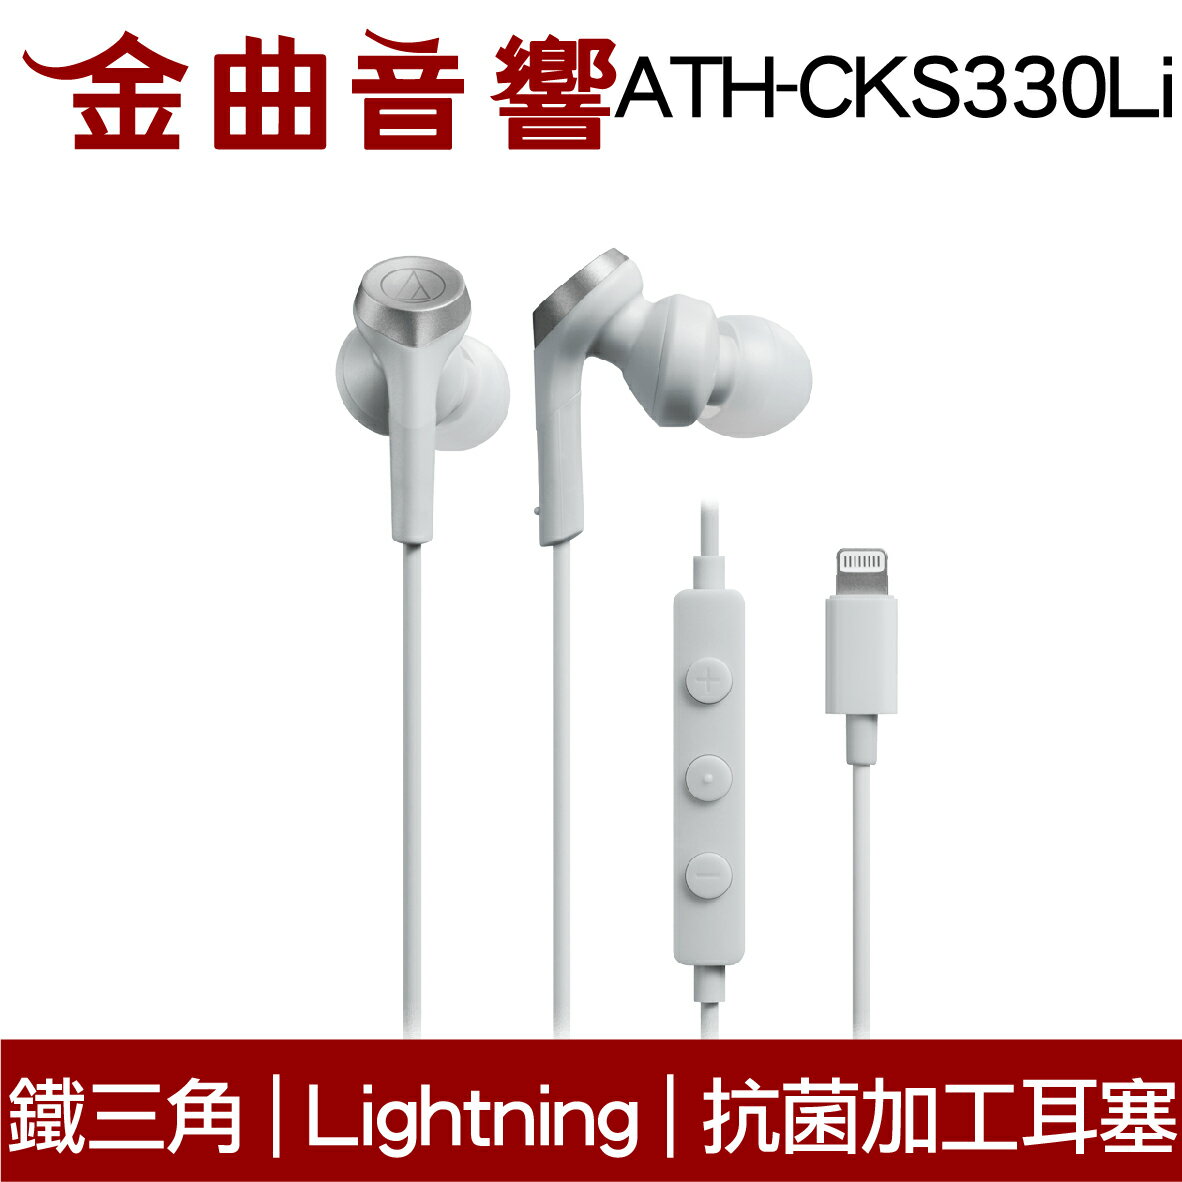 鐵三角 ATH-CKS330Li 白色 抗菌加工耳塞 Lightning端子 重低音 耳塞式 耳機 | 金曲音響